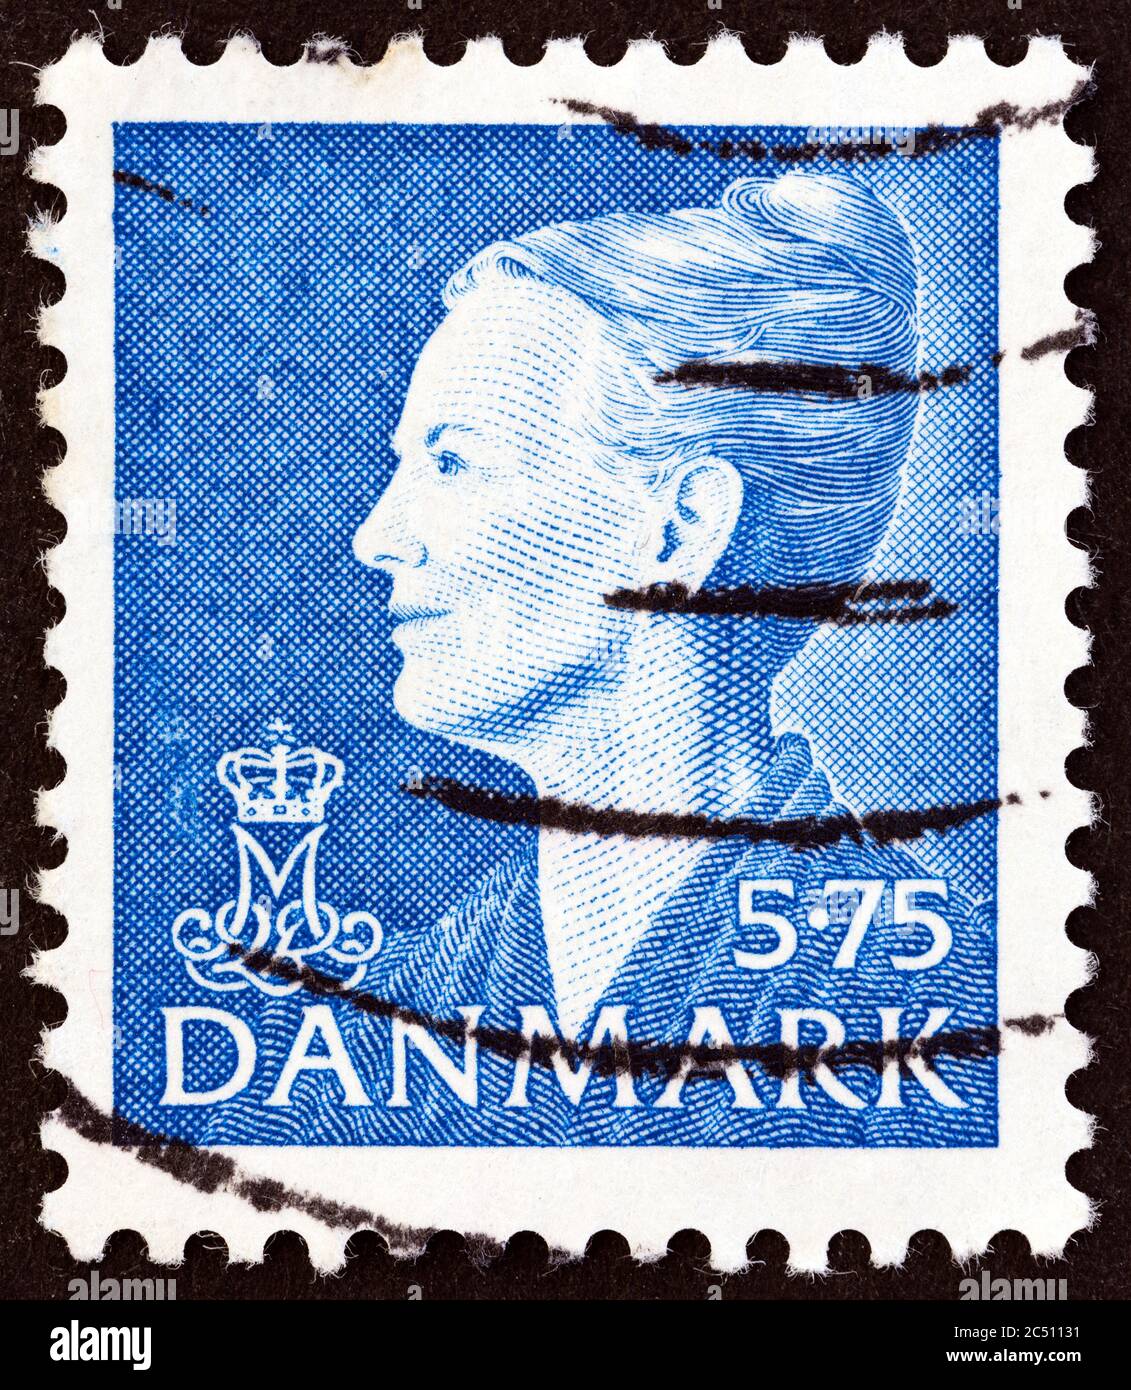 DENMARK - CIRCA 2000: A stamp printed in Denmark shows Queen Margrethe II, circa 2000. Stock Photo